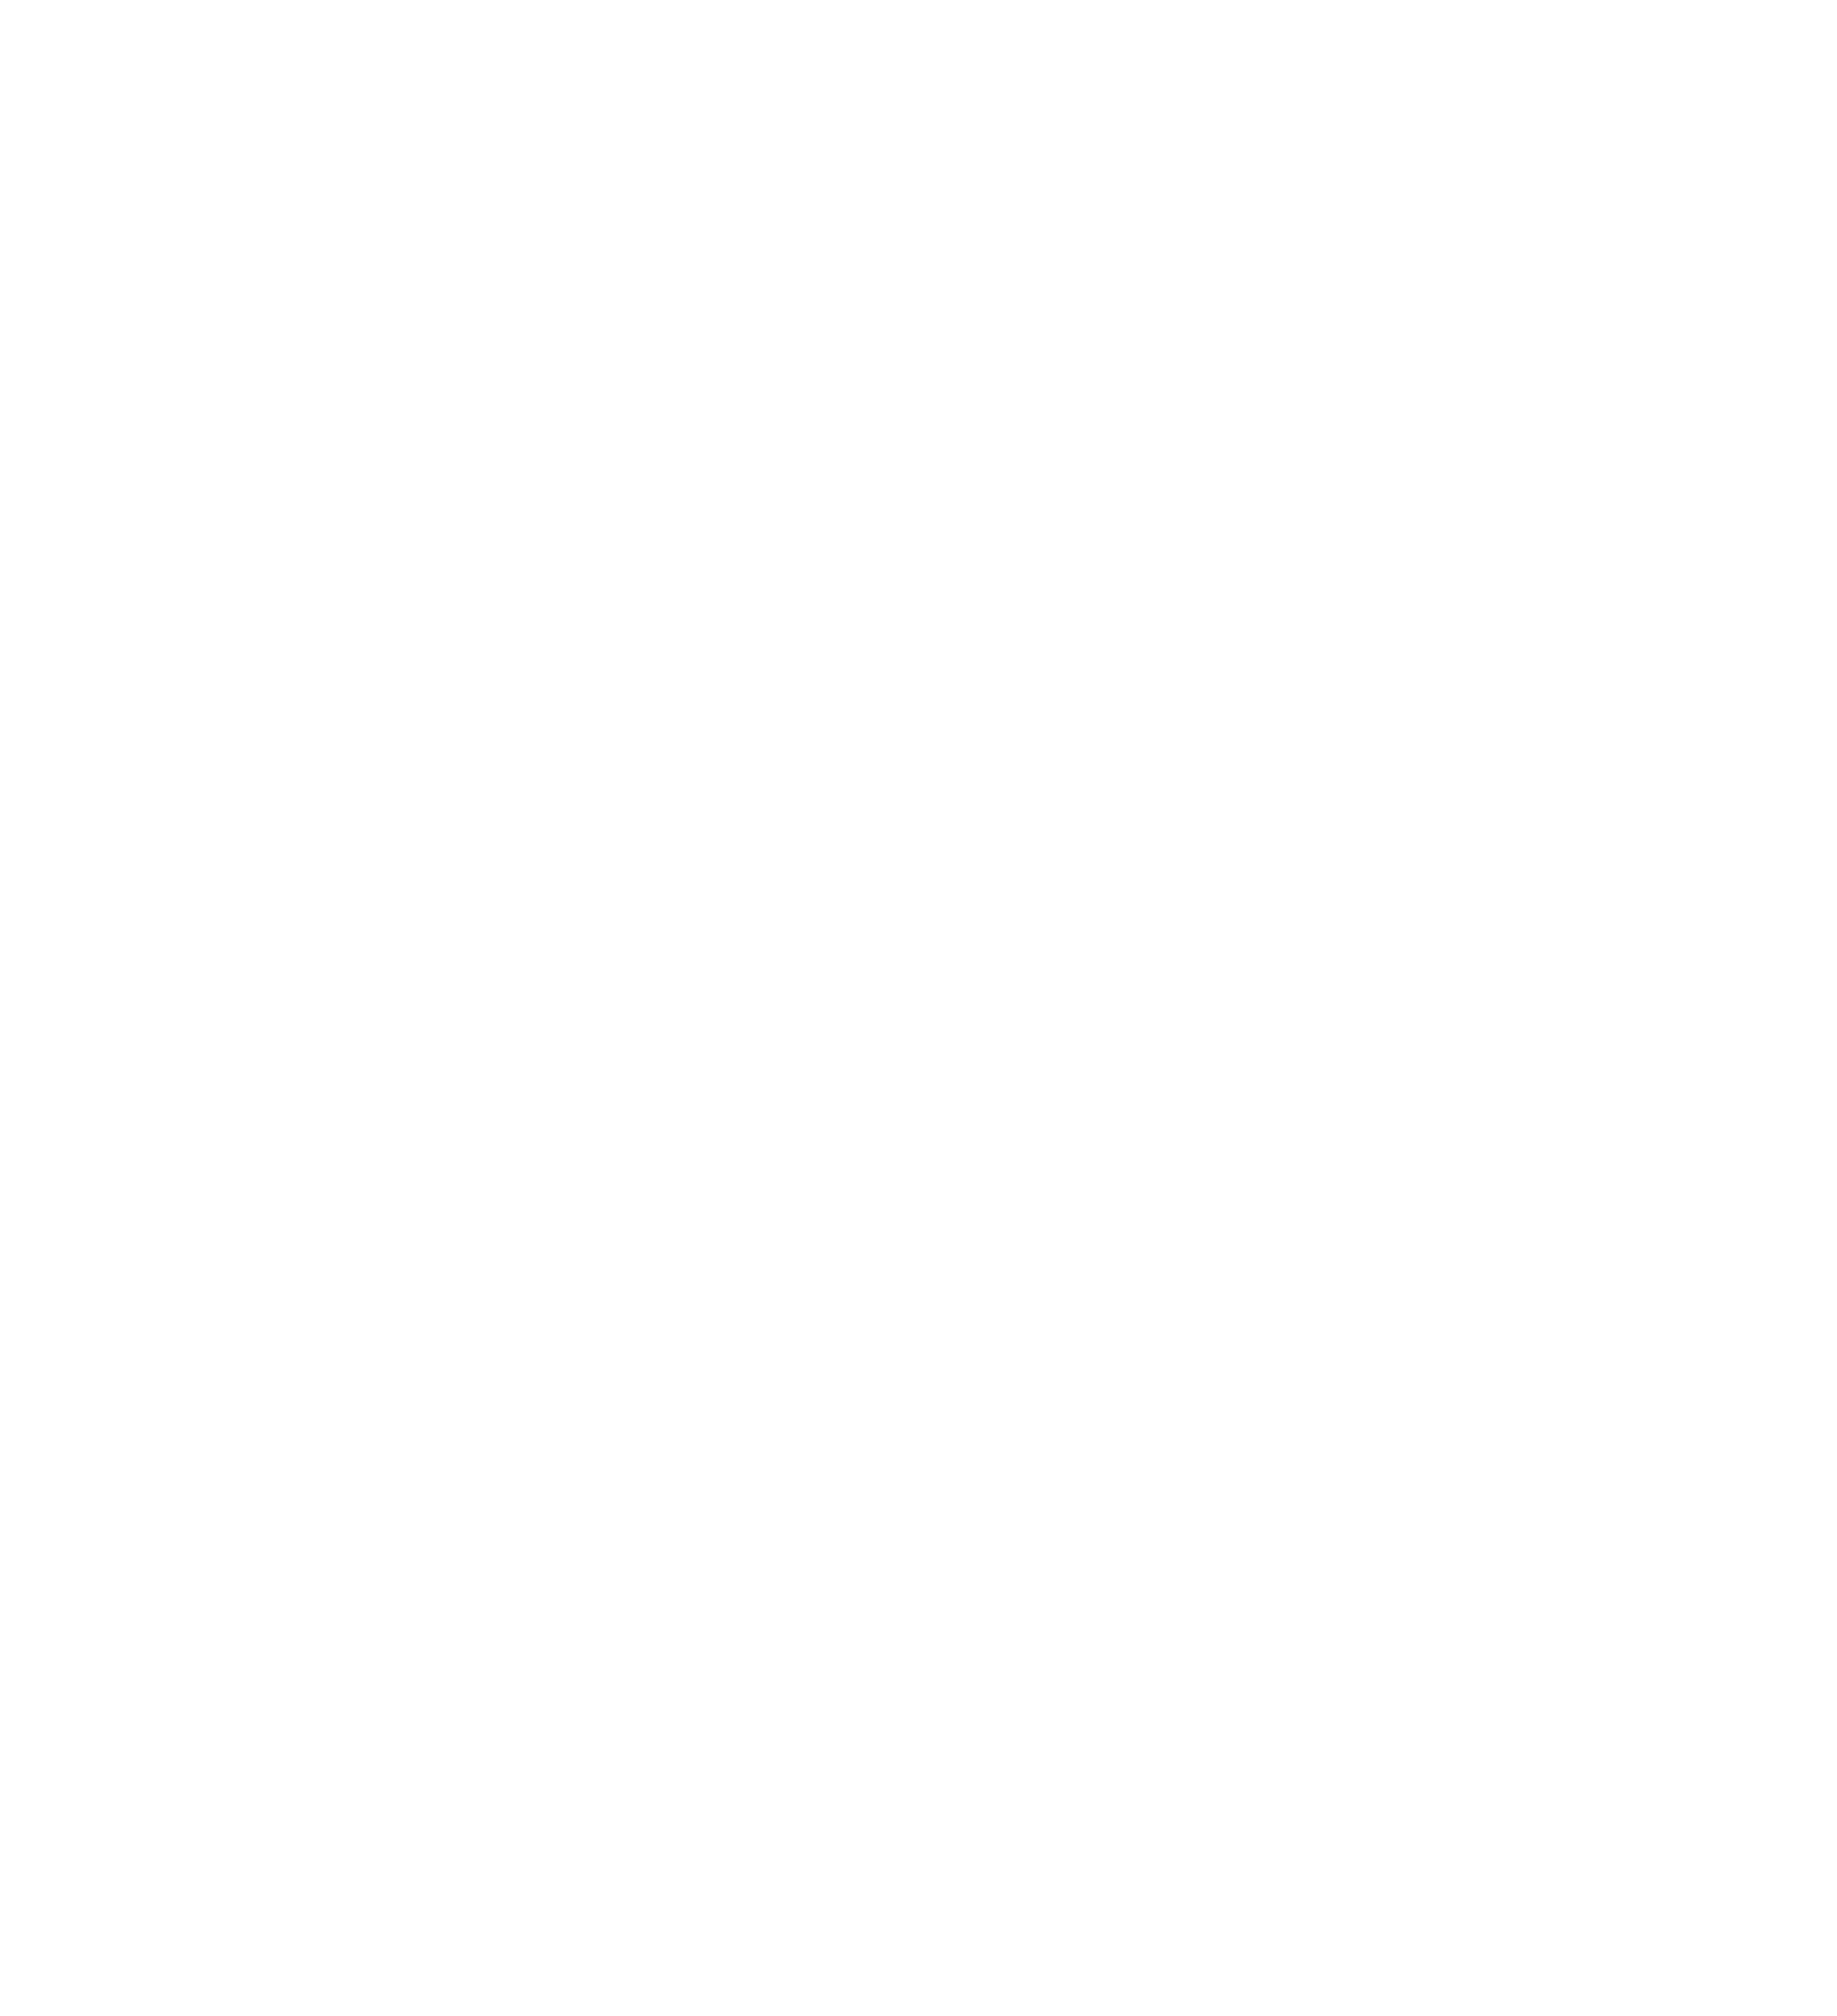 logo vikay